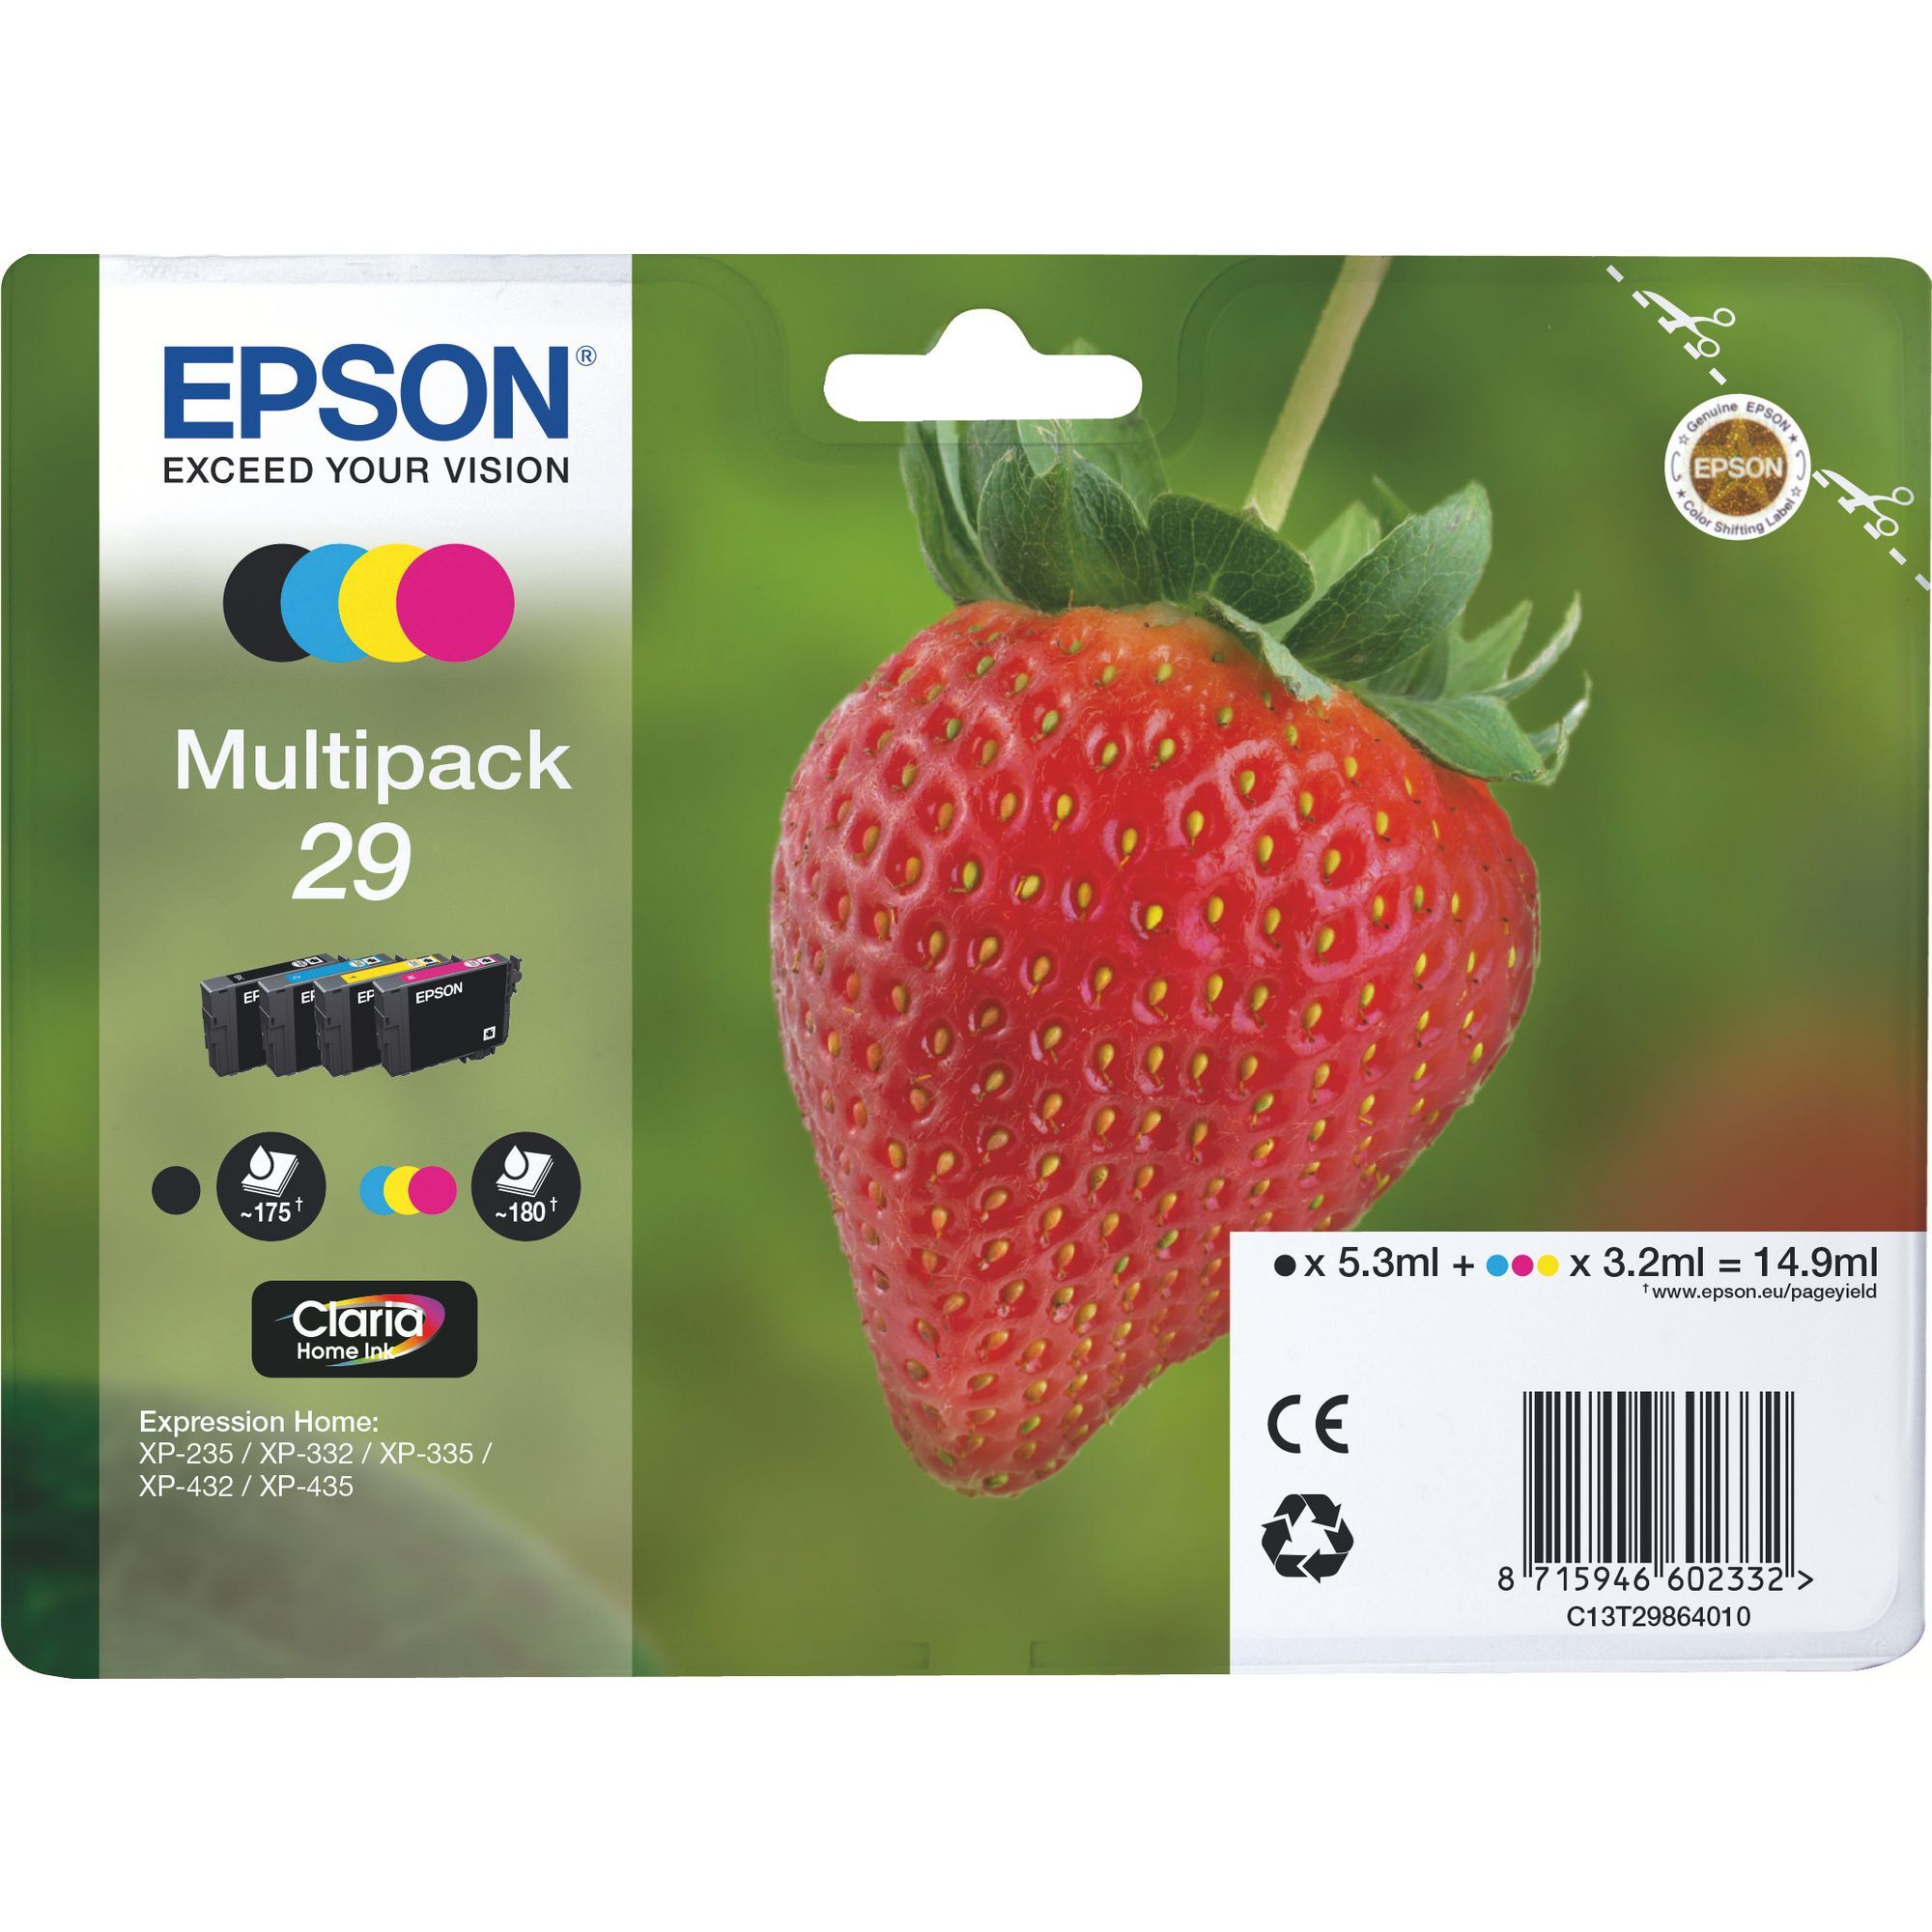 Epson 29 Pack 4 cartouches noire + couleurs pour imprimante jet d'encre Beige